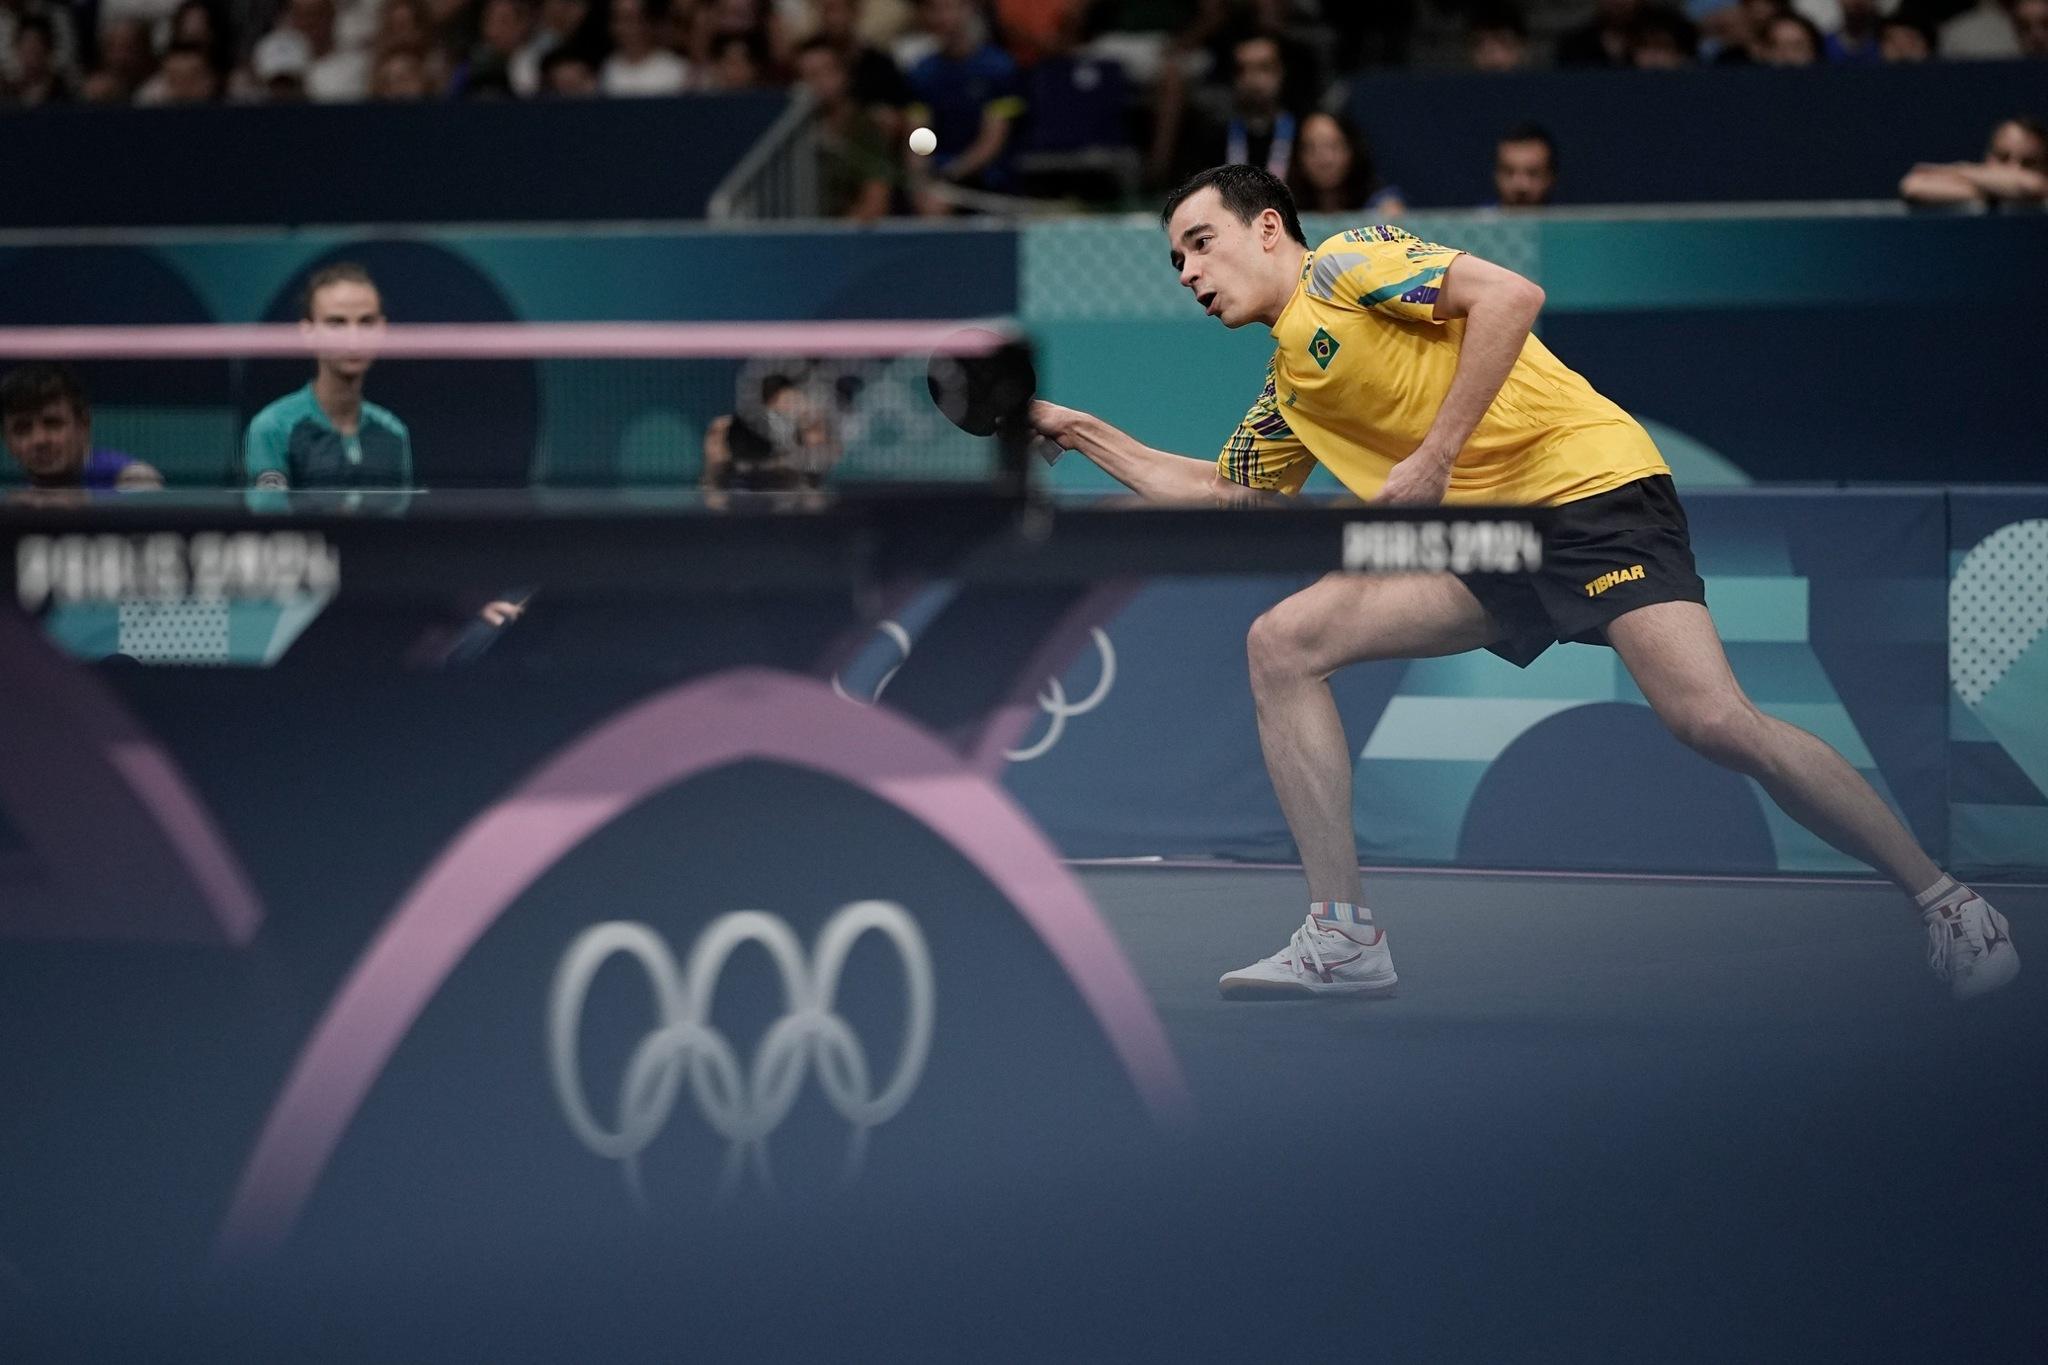 Jogos Olímpicos Paris 2024 - Tenis de mesa Masculino - Hugo Calderano x Alexis Lebrun